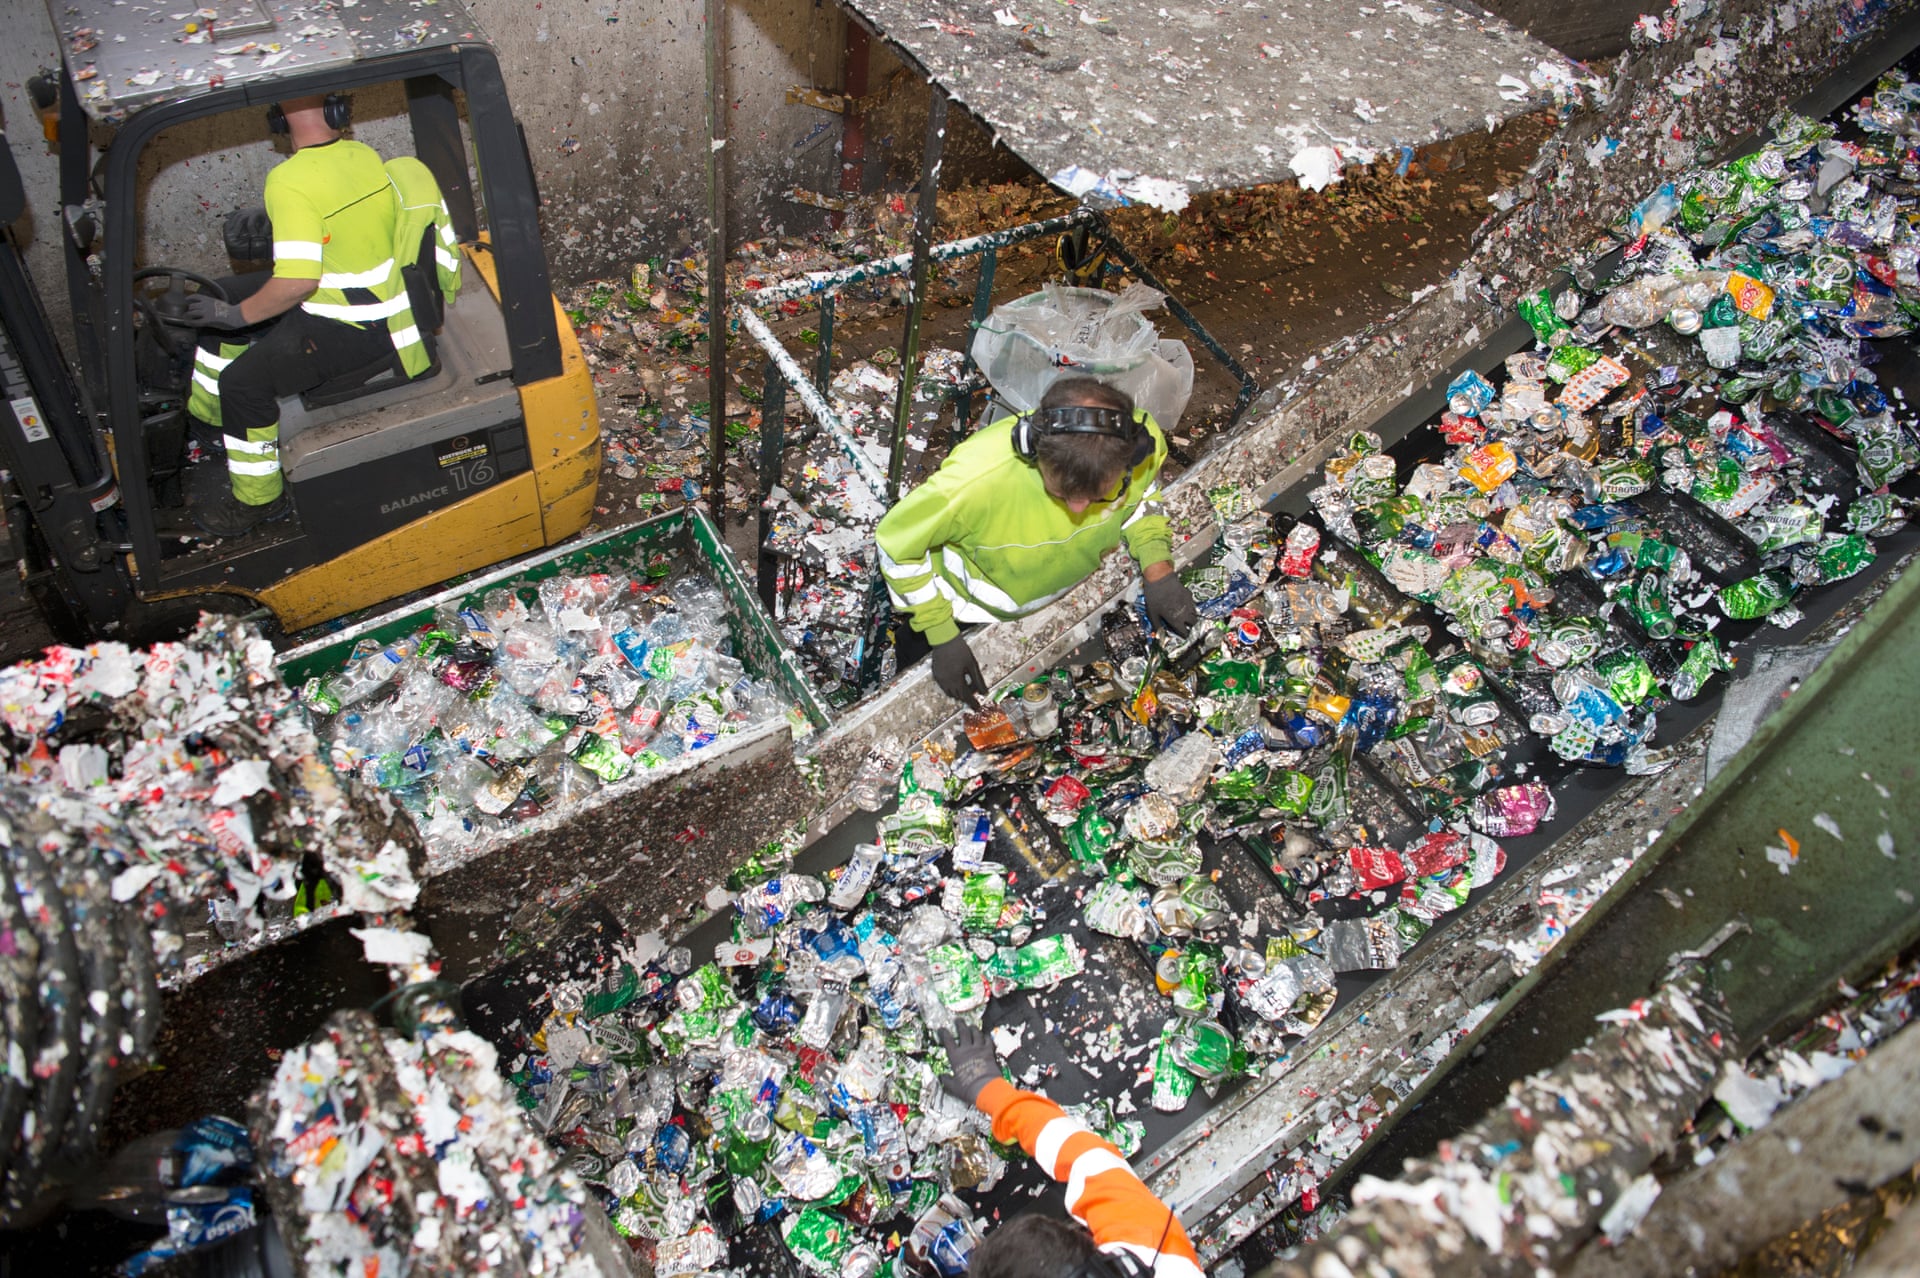 За даними компанії Infinitum, яка запустила вельми ефективну ініціативу, частина пластикових матеріалів вже була перероблена в 50 разів, і тепер тільки 1% пластикових пляшок опиняються на полігонах